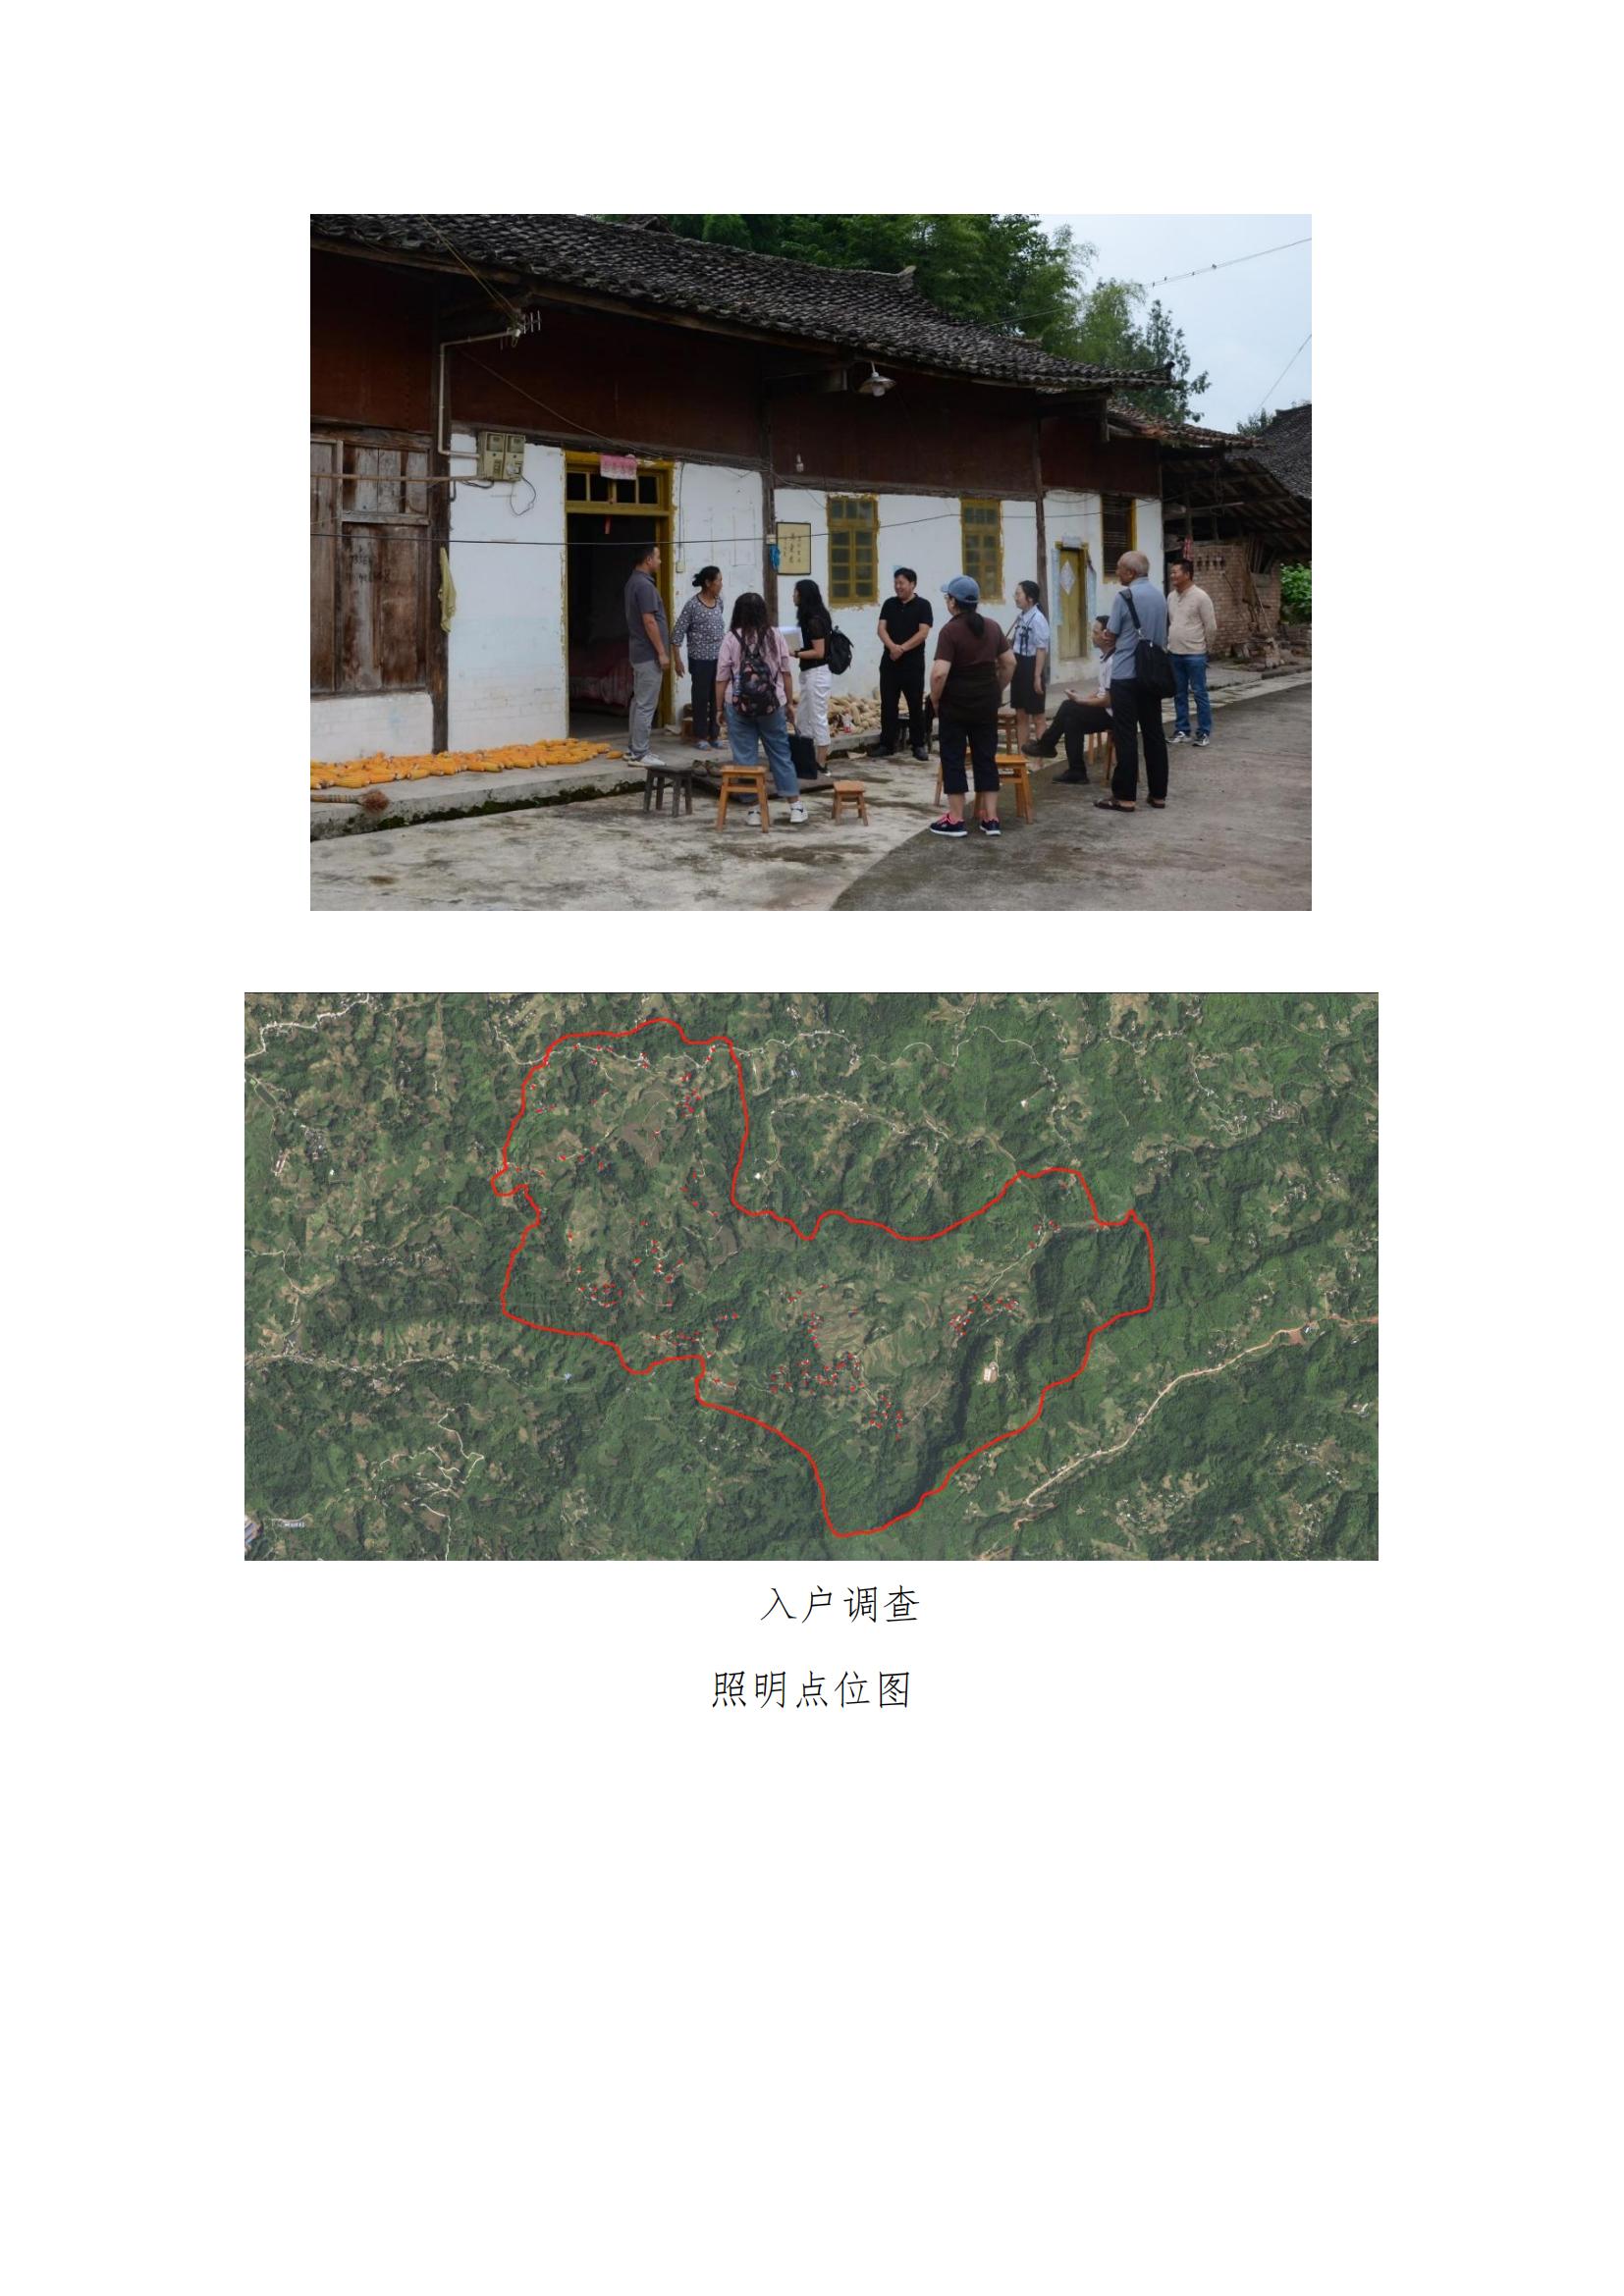 雅安分会——共建联动平台 助力乡村振兴(图3)